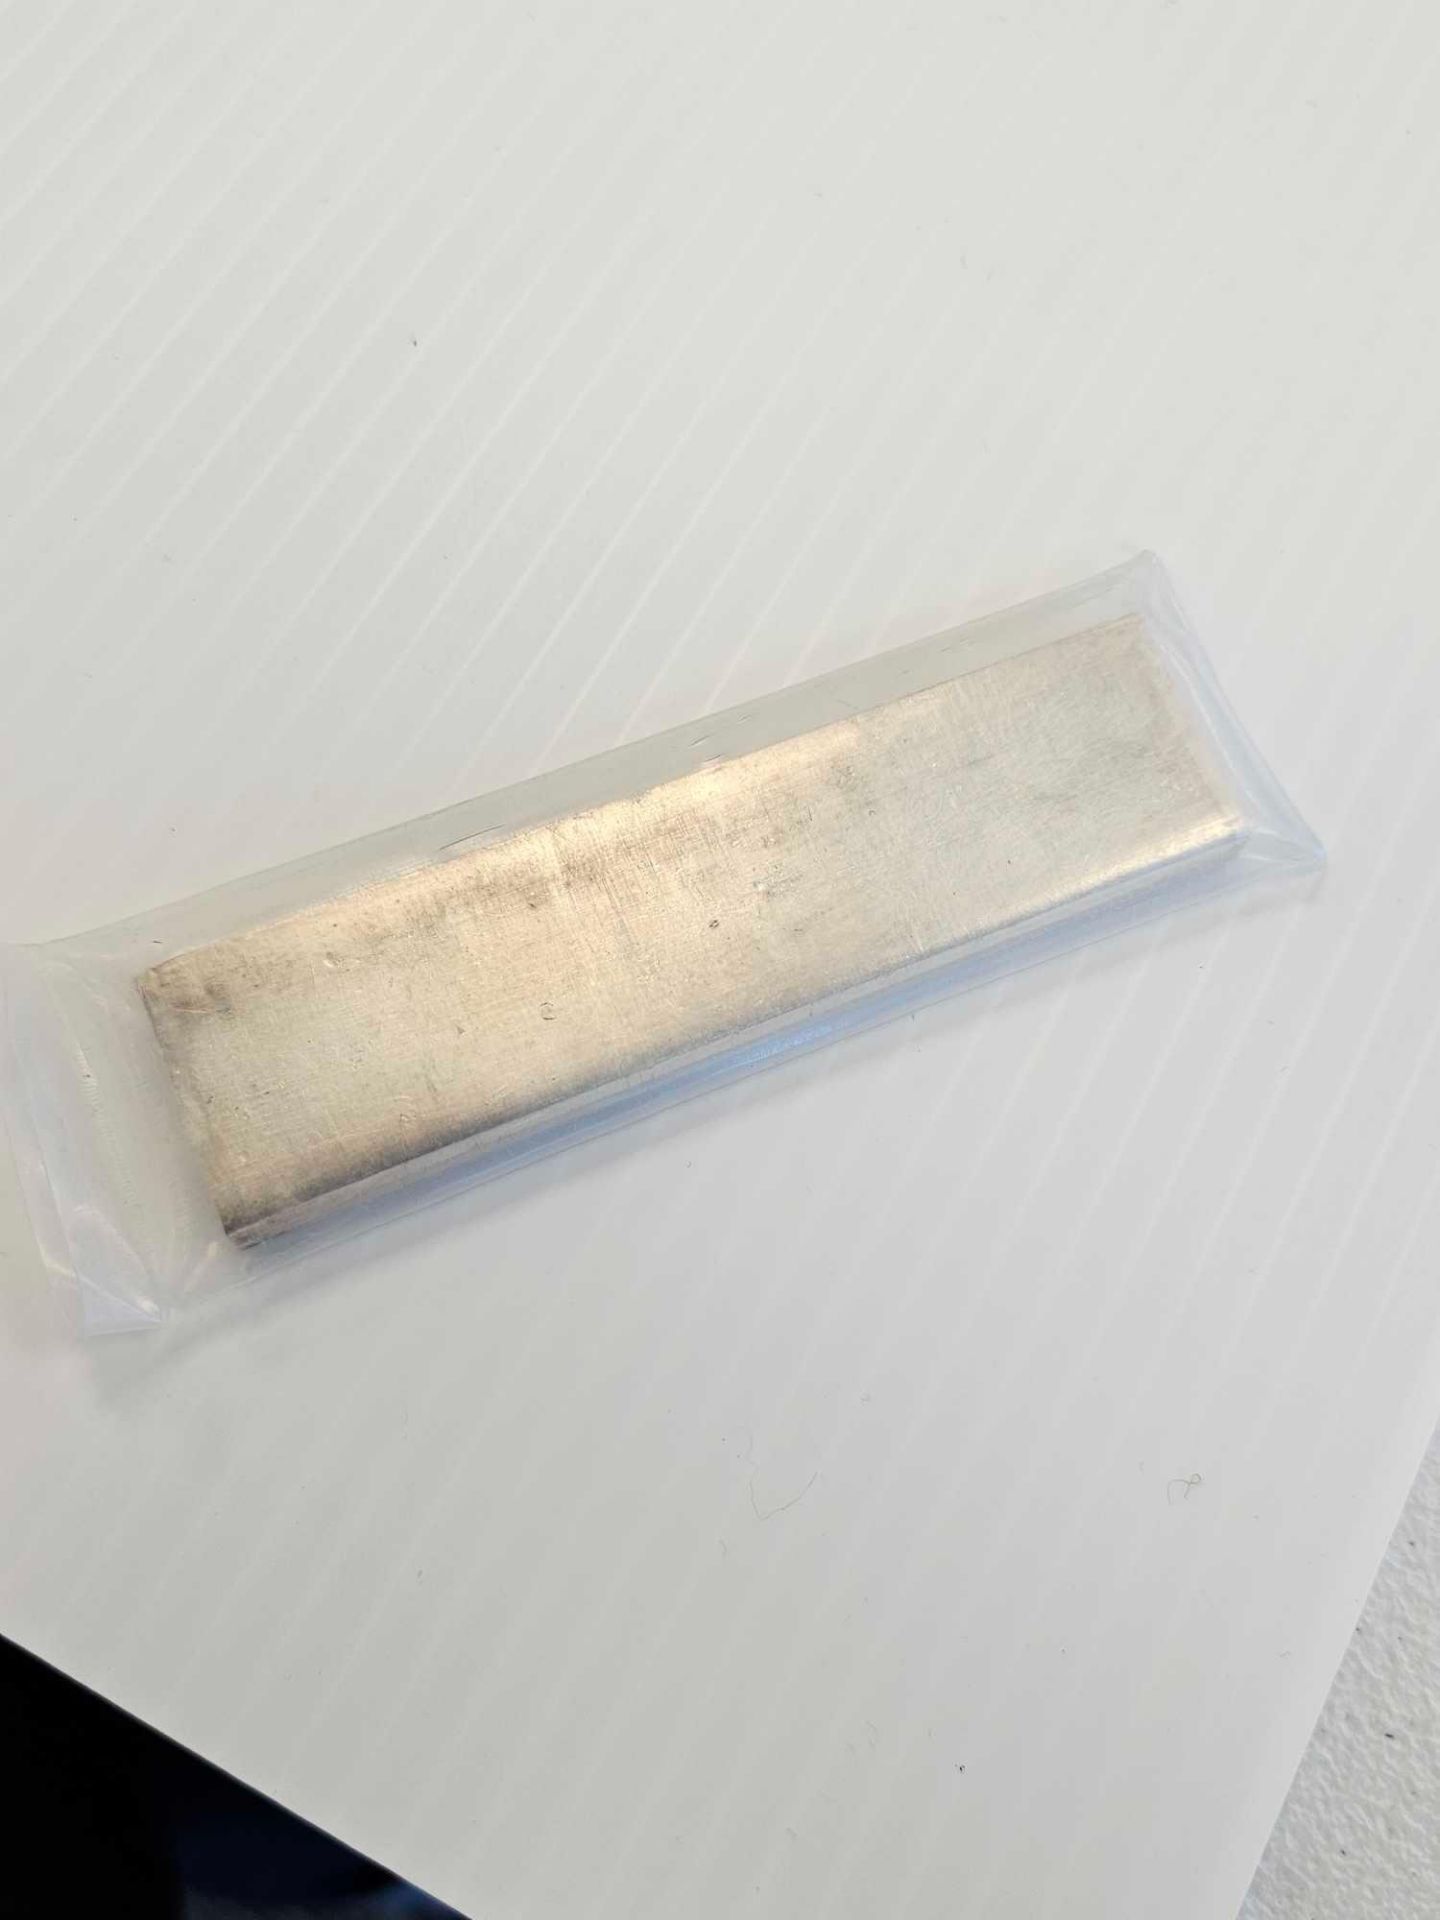 rare 5.69 oz vintage draper mint silver bar (kit Kat stick) - Image 4 of 4